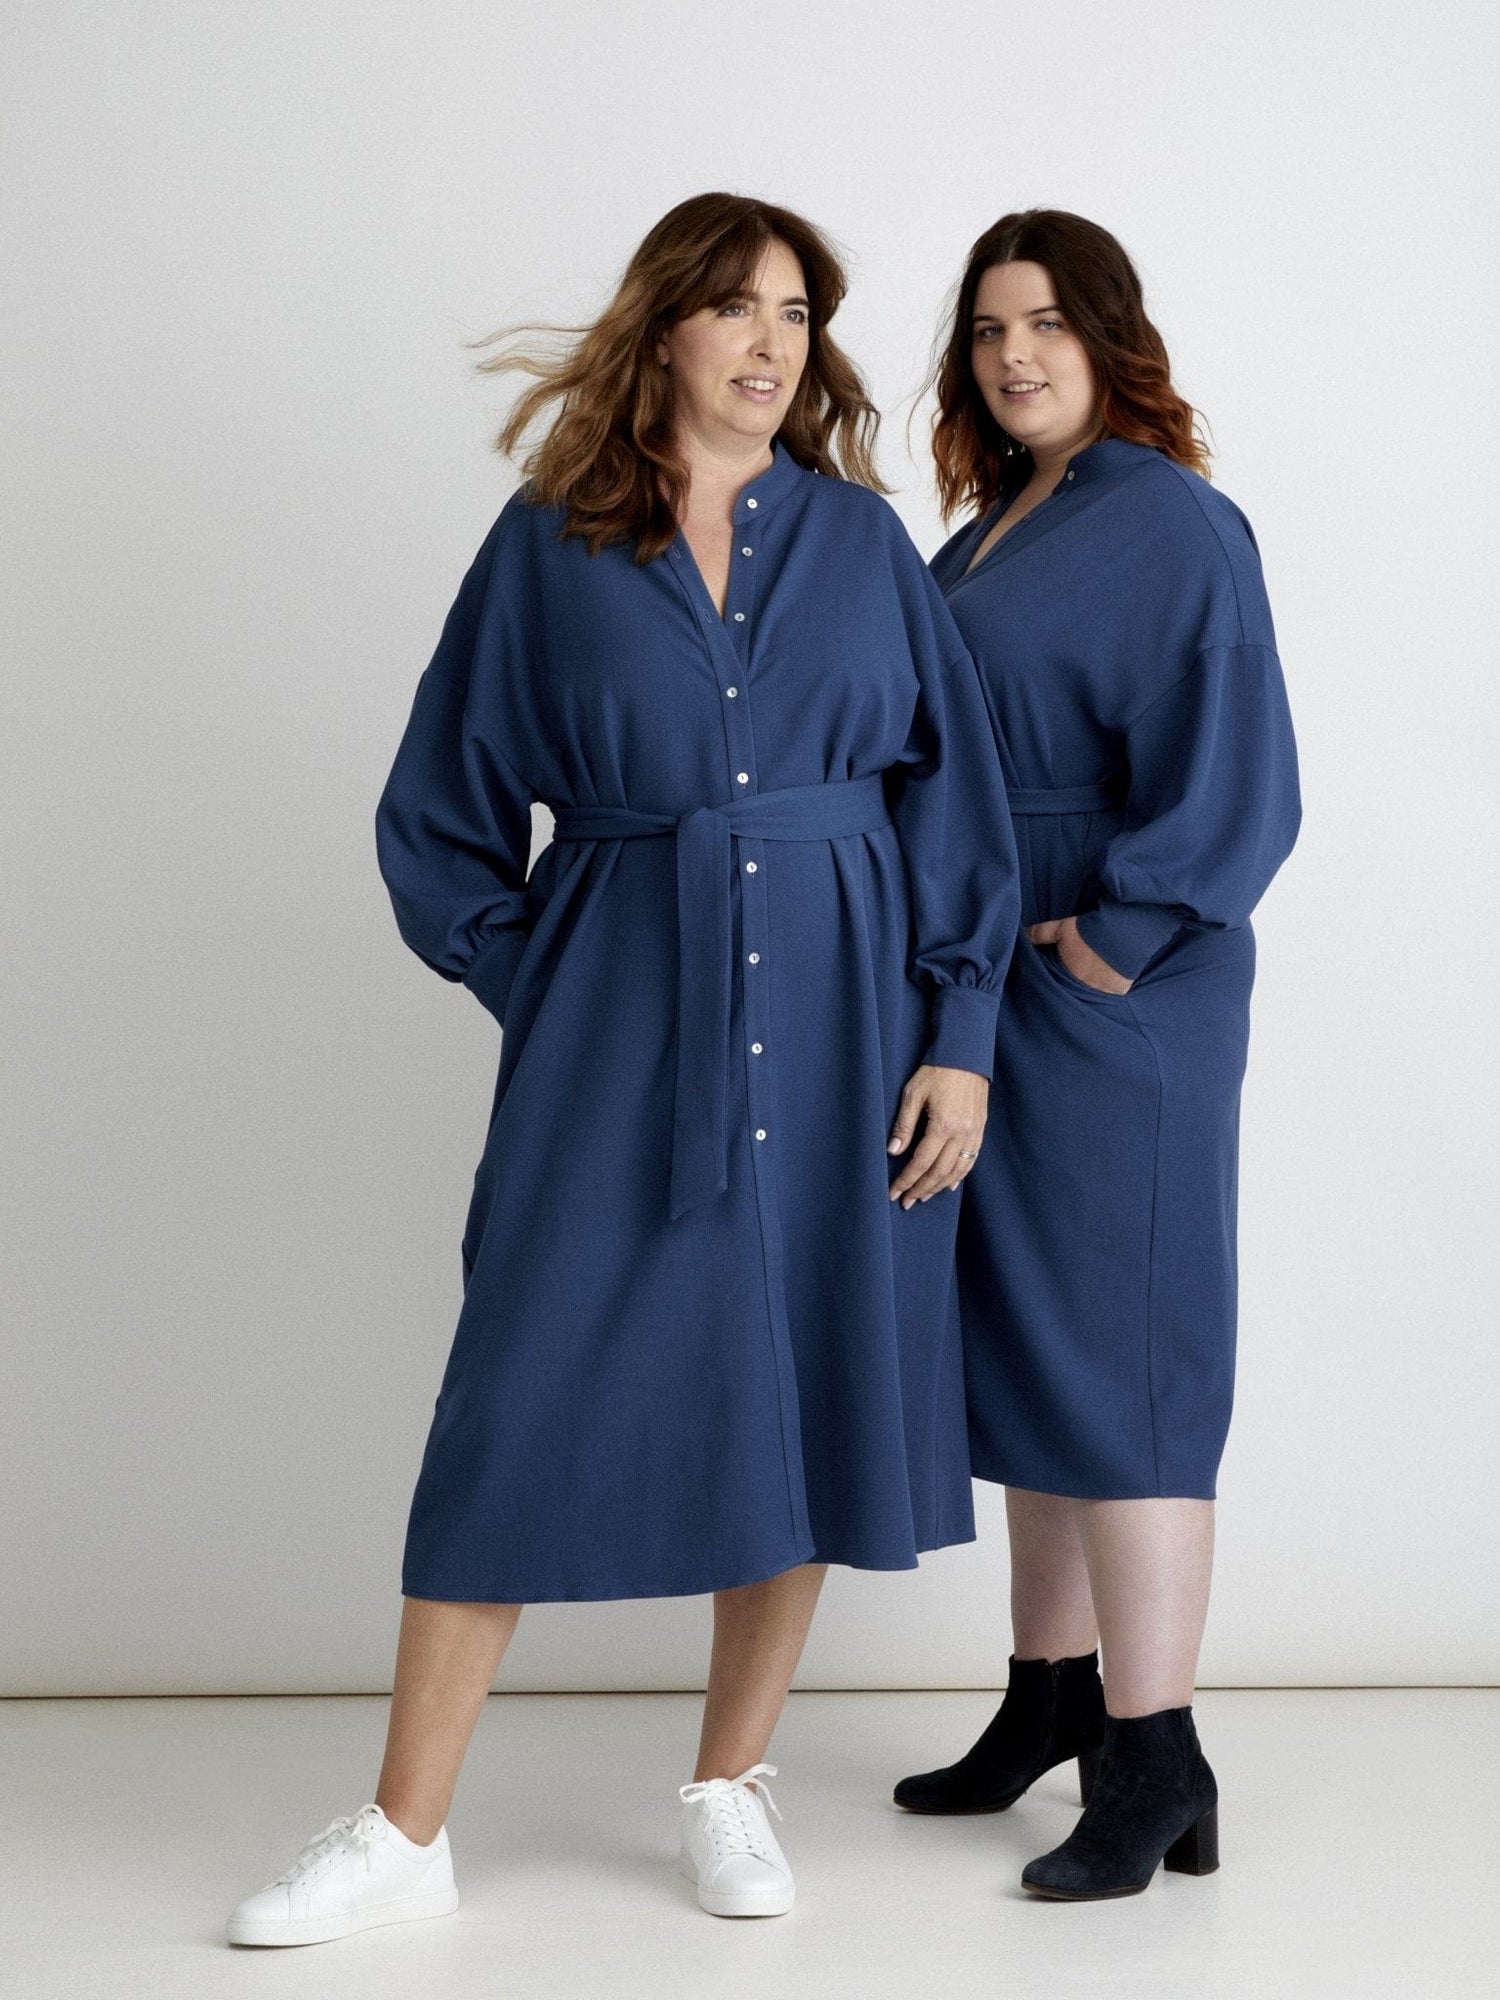 Les Militantes - Robe bleu grande taille, chic, tendance et de qualité made in France